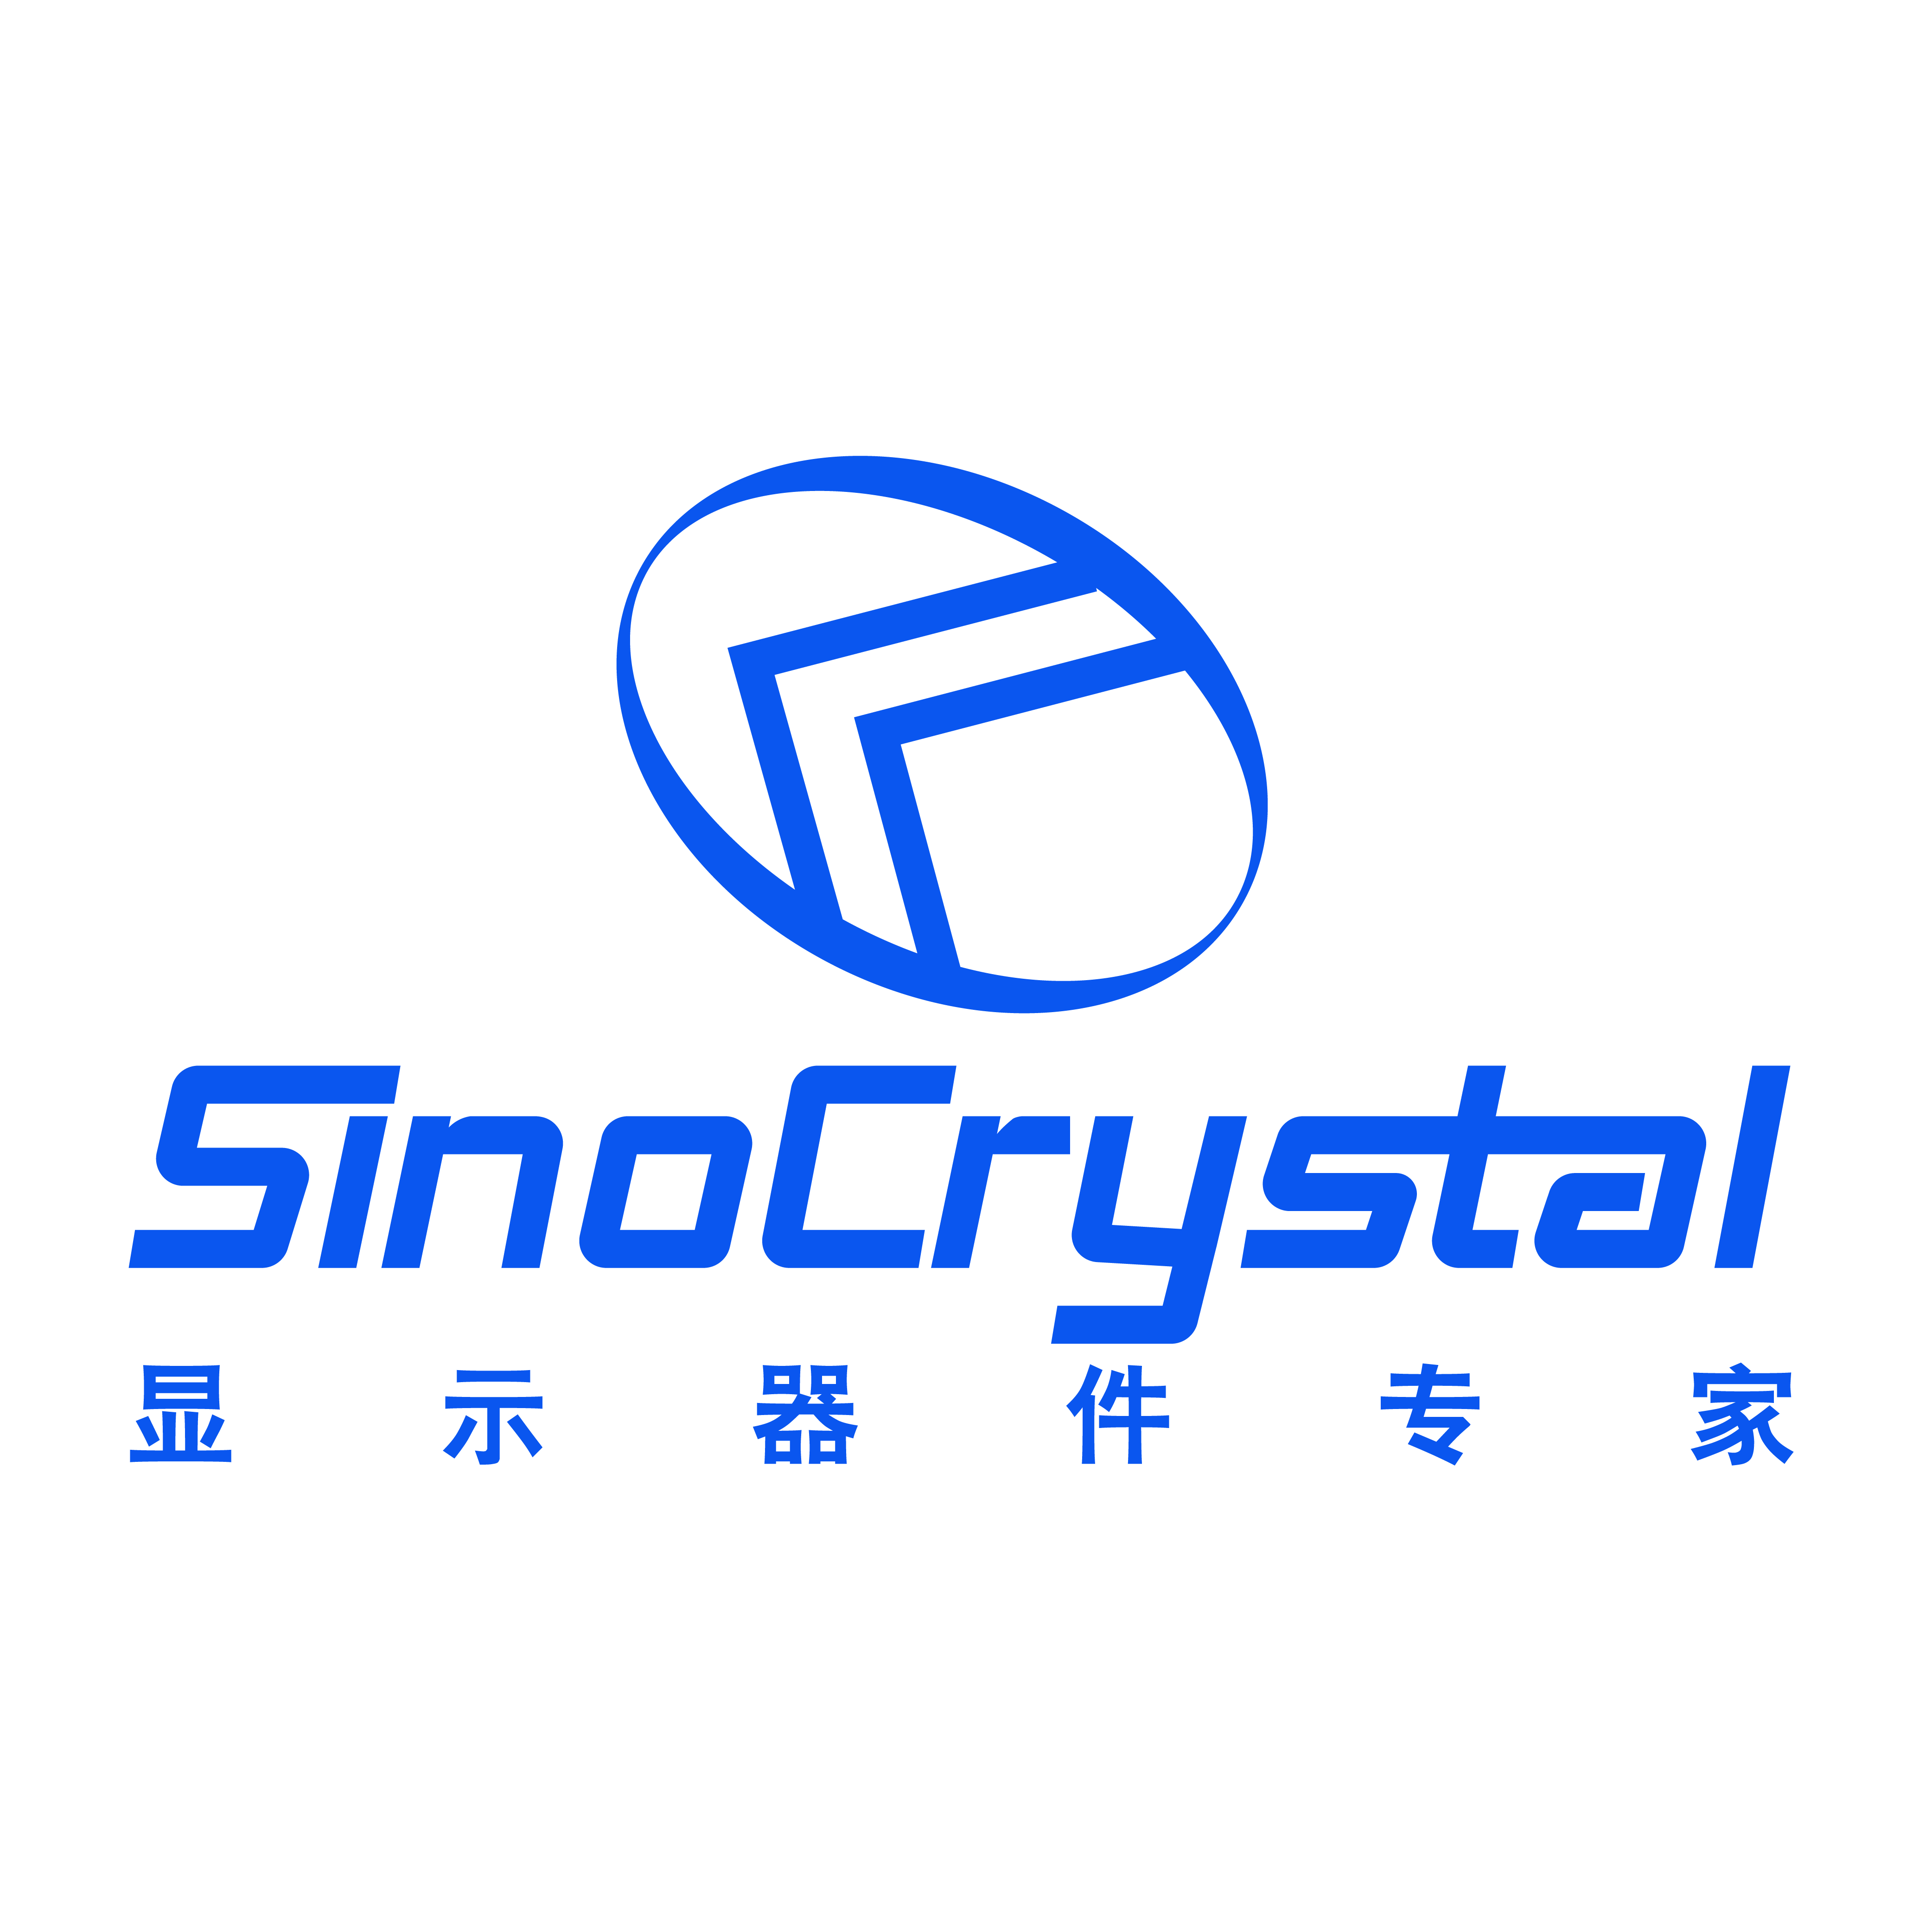 Sinocrystal Display Manufacturer